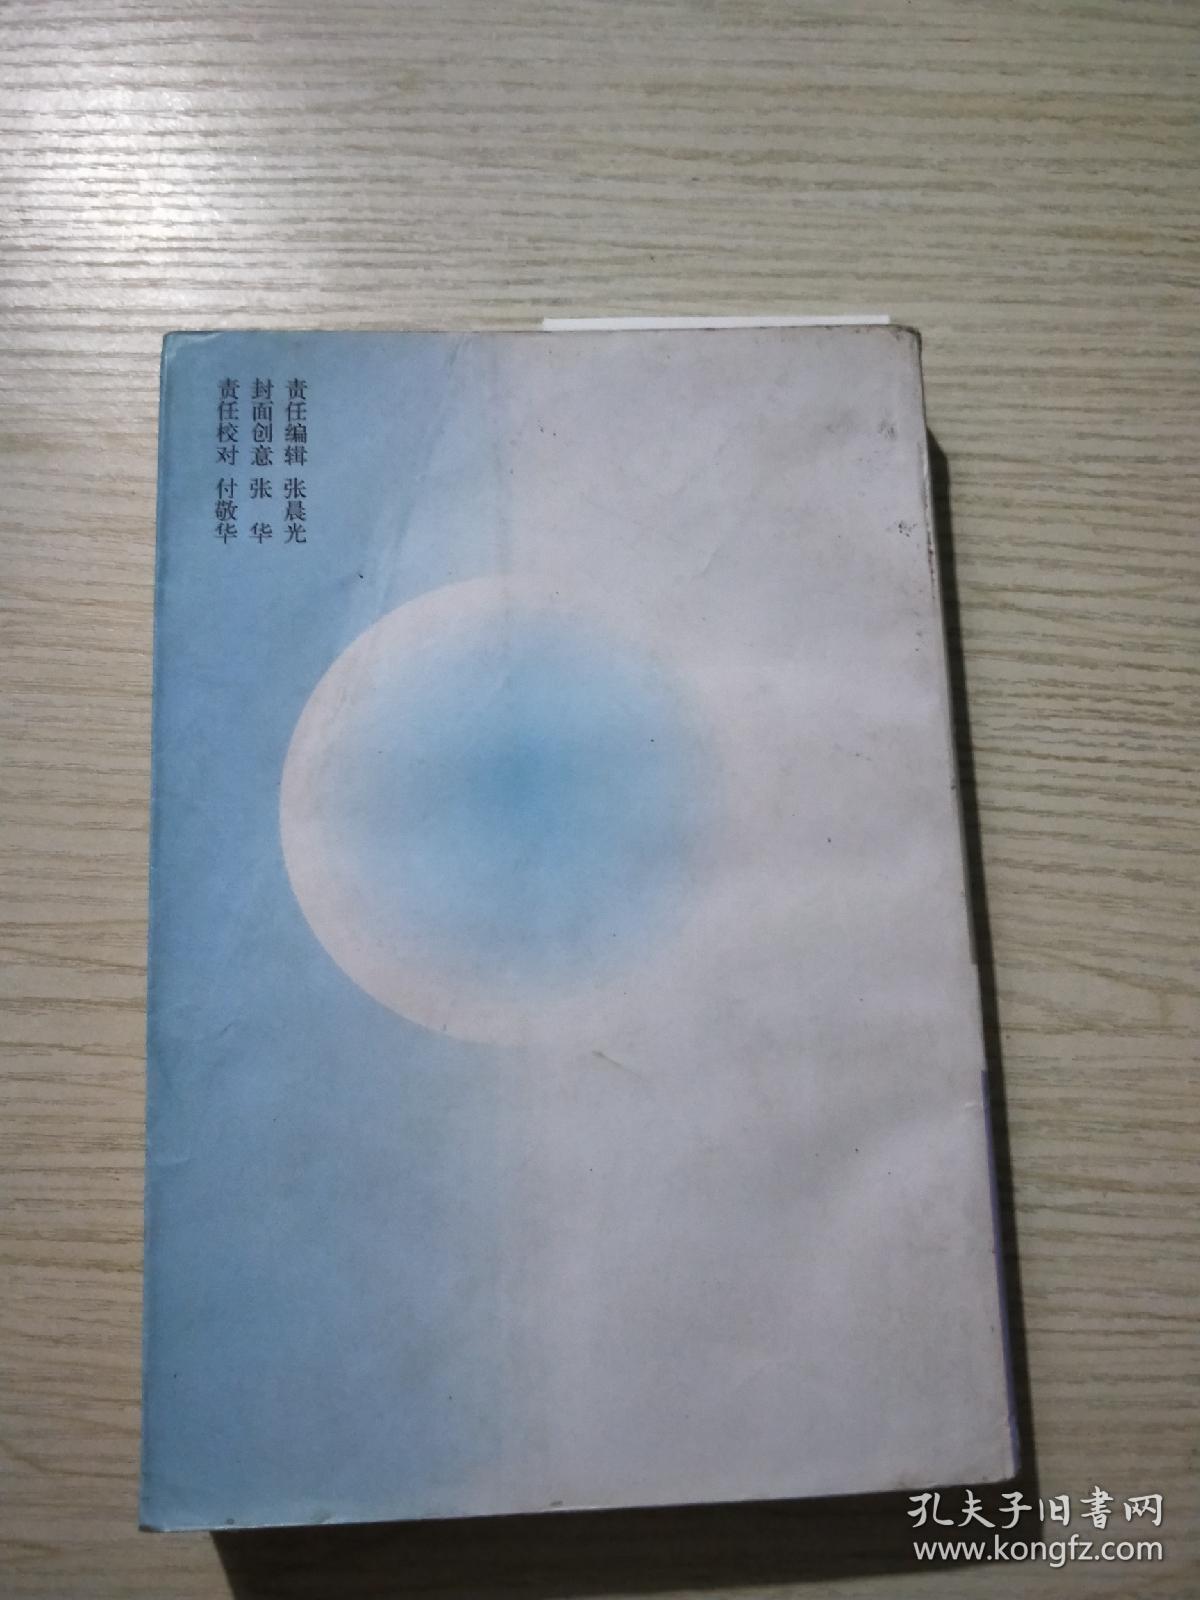 近代中国江湖秘闻（上卷）-近化中国社会史料丛书